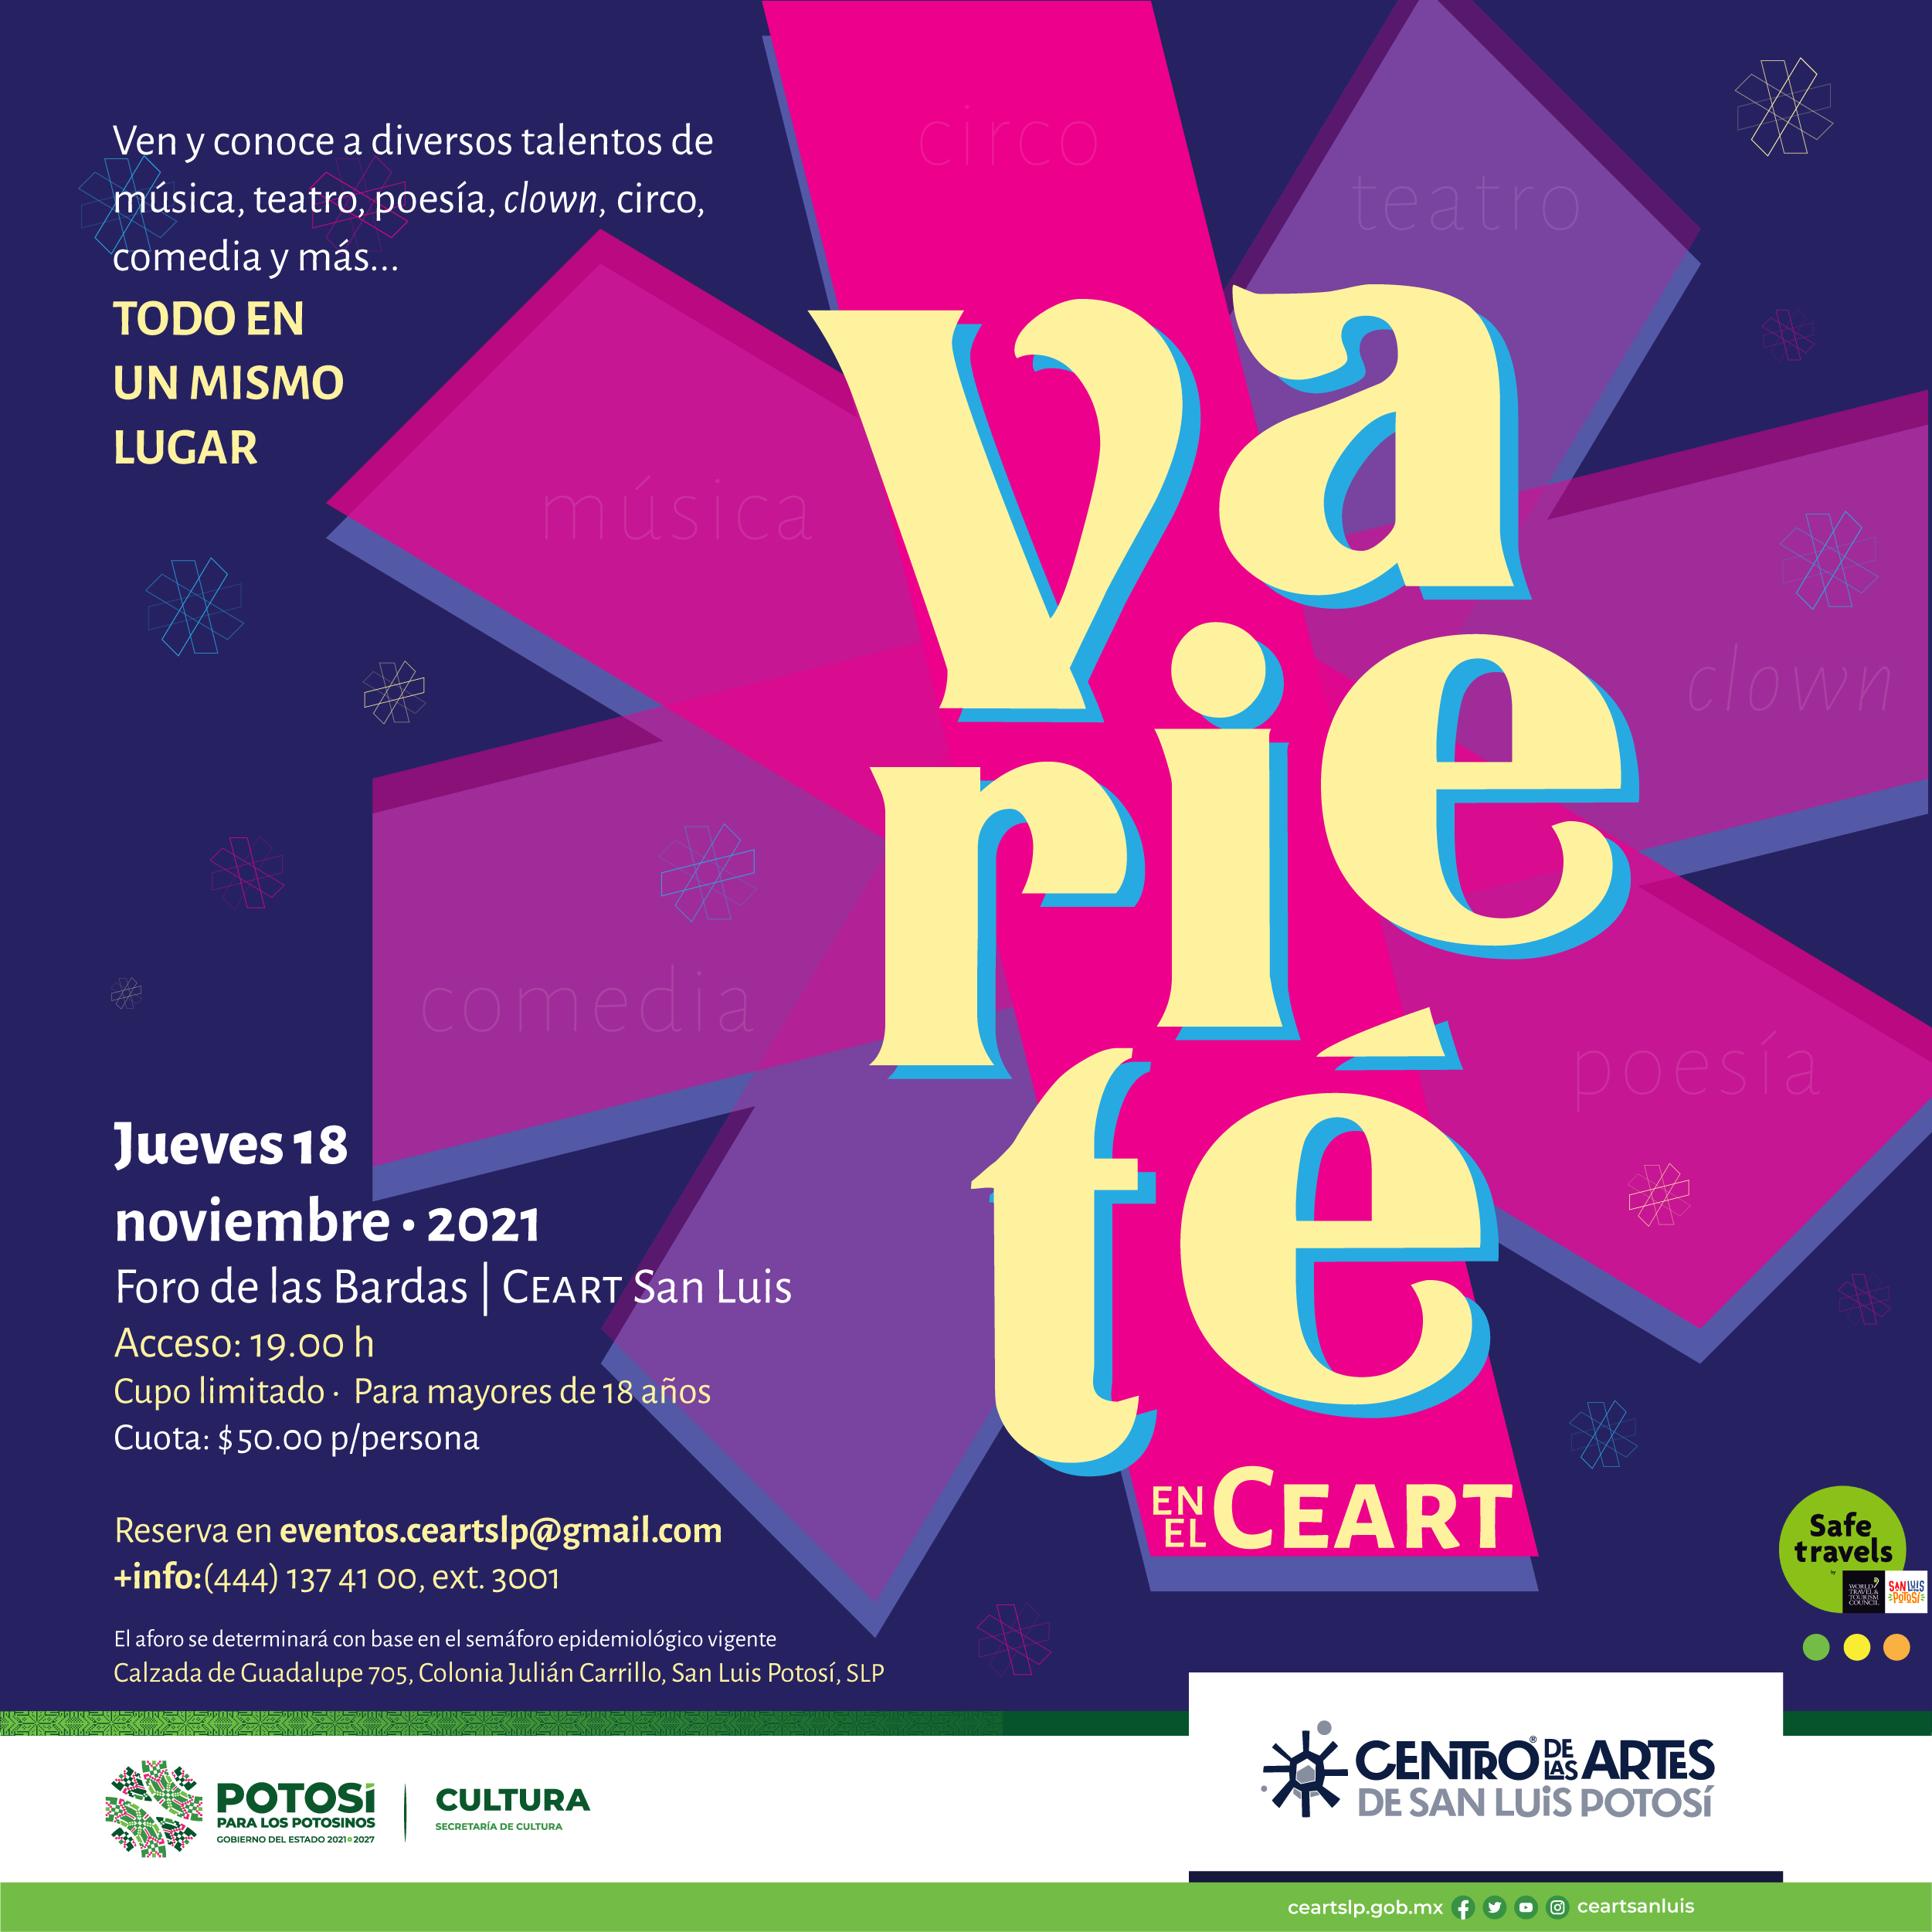 Se llevará a cabo la primer Varieté en el Ceart, evento a realizarse este jueves 18 de noviembre 2021, en punto de las 19:00 h.